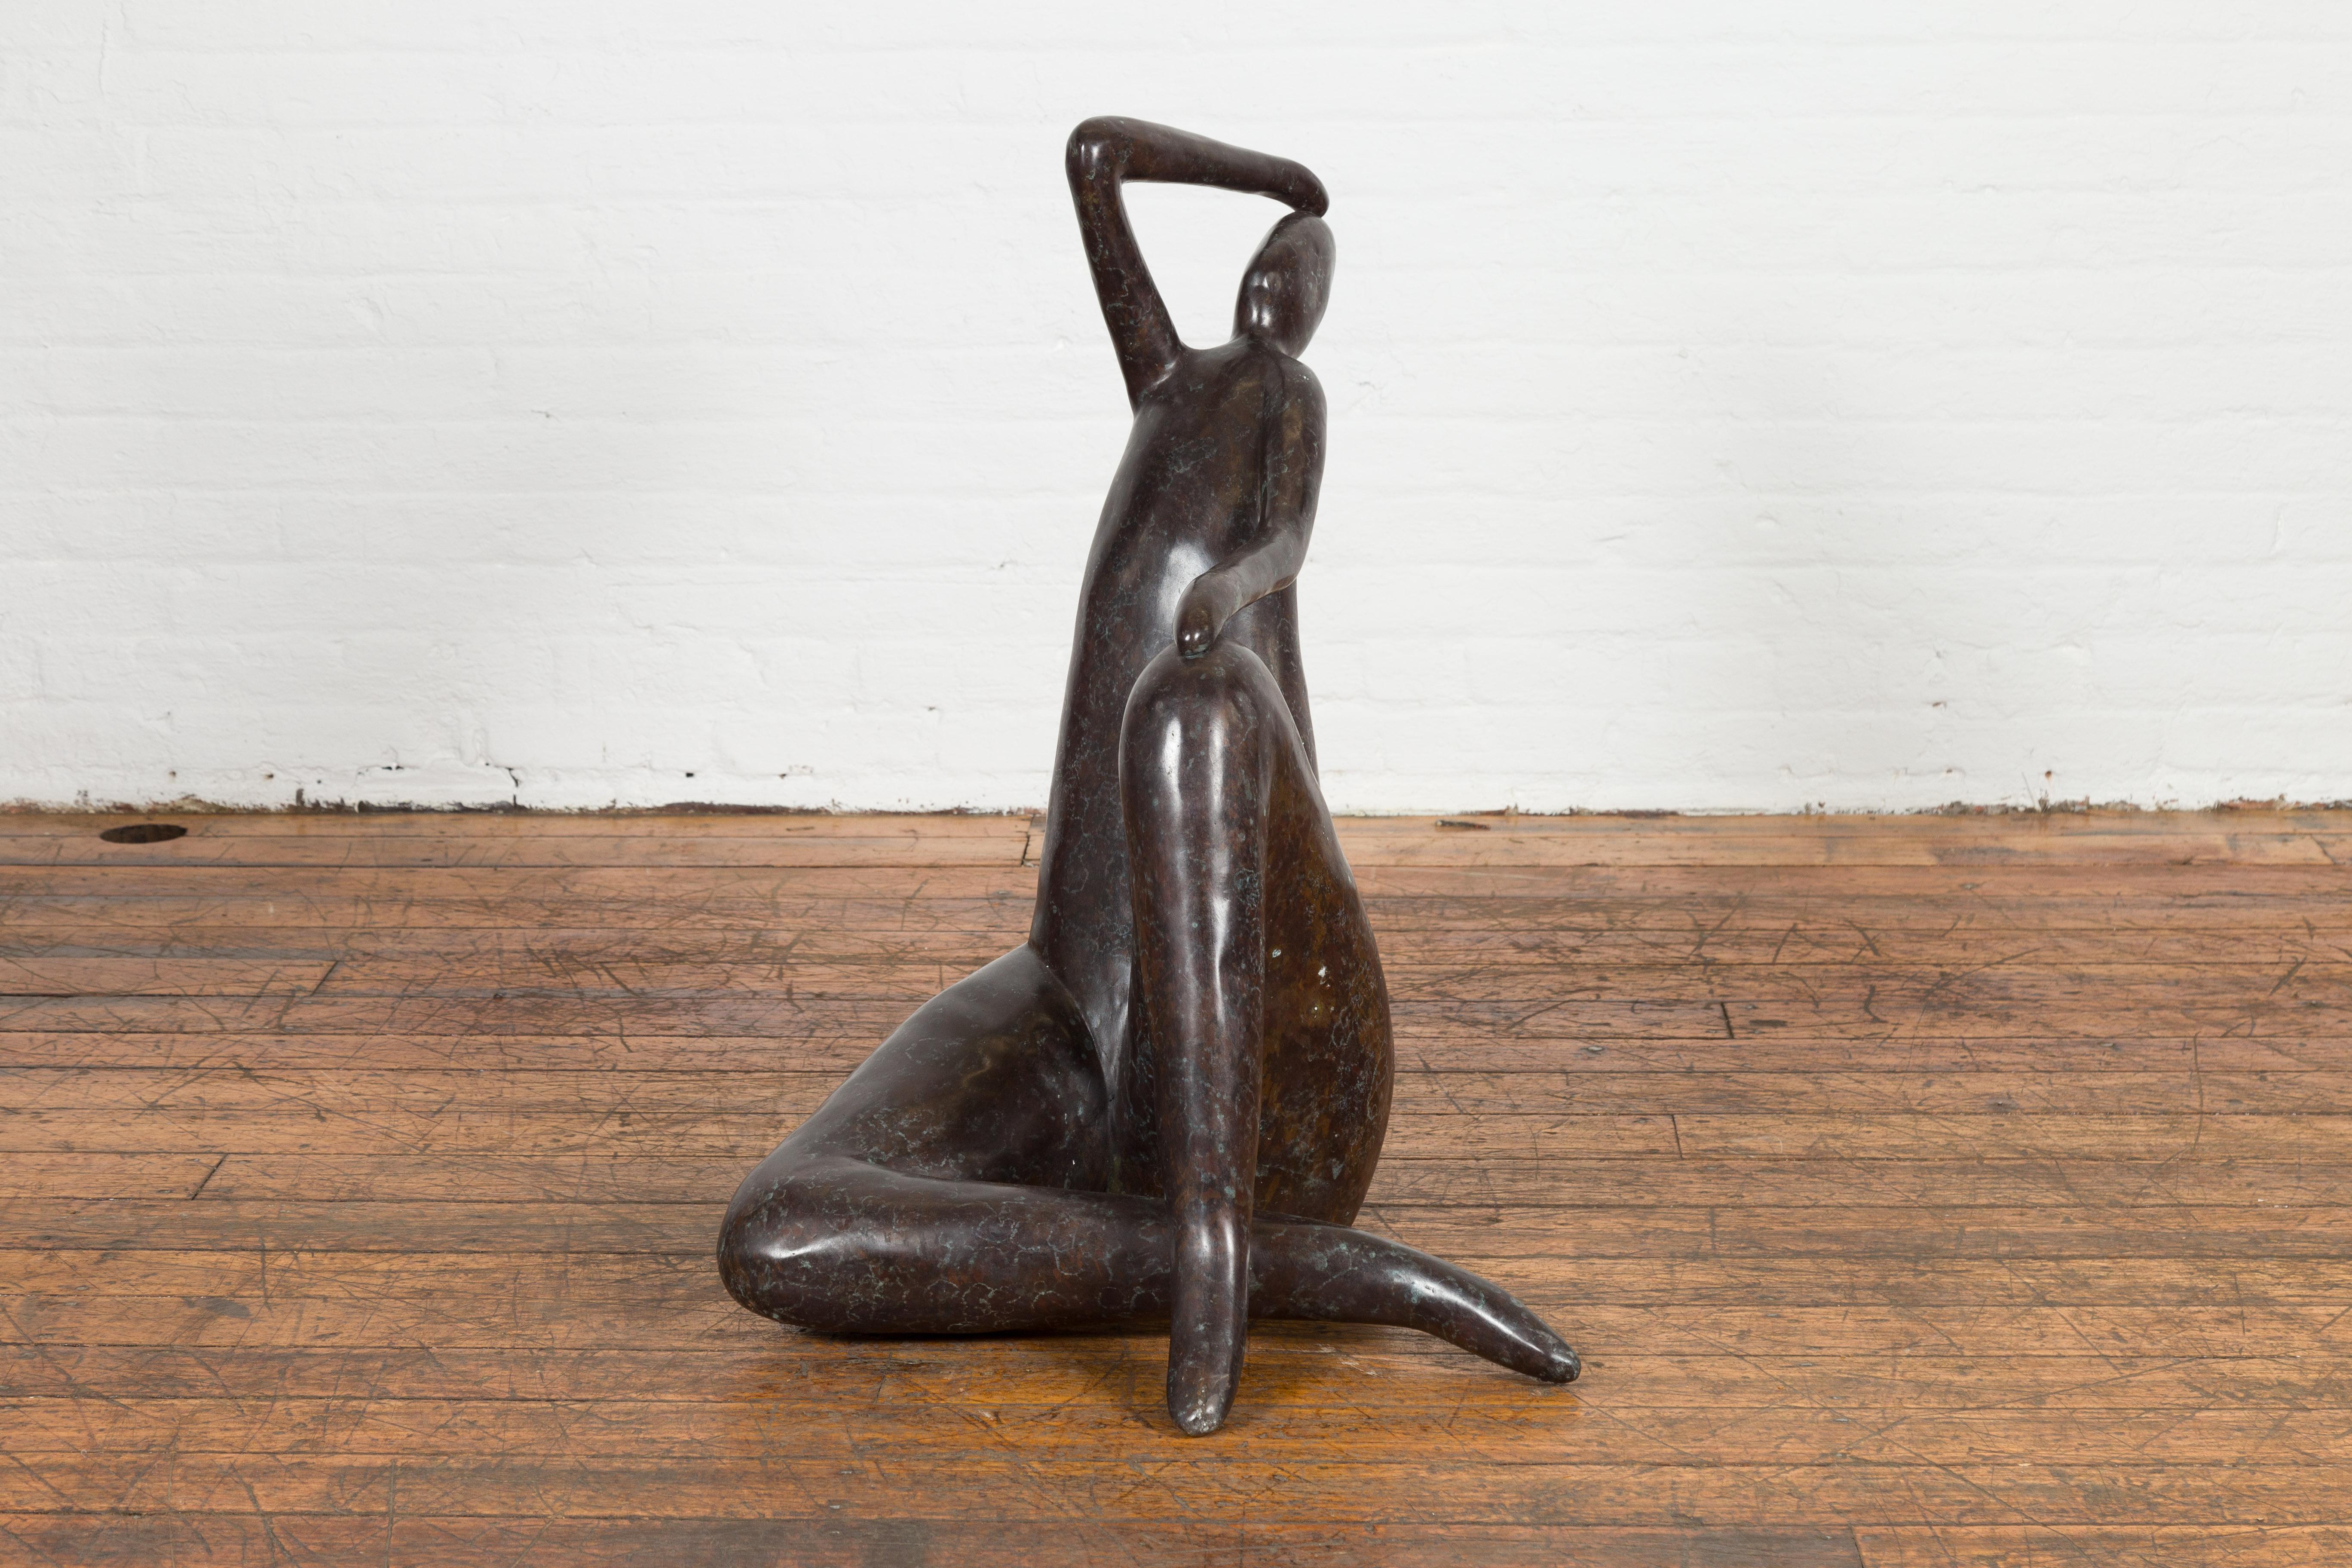 Abstrakte Skulptur aus Bronze im Wachsausschmelzverfahren, die eine Dame mit dunkler Patina darstellt. Bringen Sie künstlerisches Flair in Ihre Umgebung mit dieser zeitgenössischen Bronzeskulptur einer abstrakten Dame. Diese Statue, die nach dem